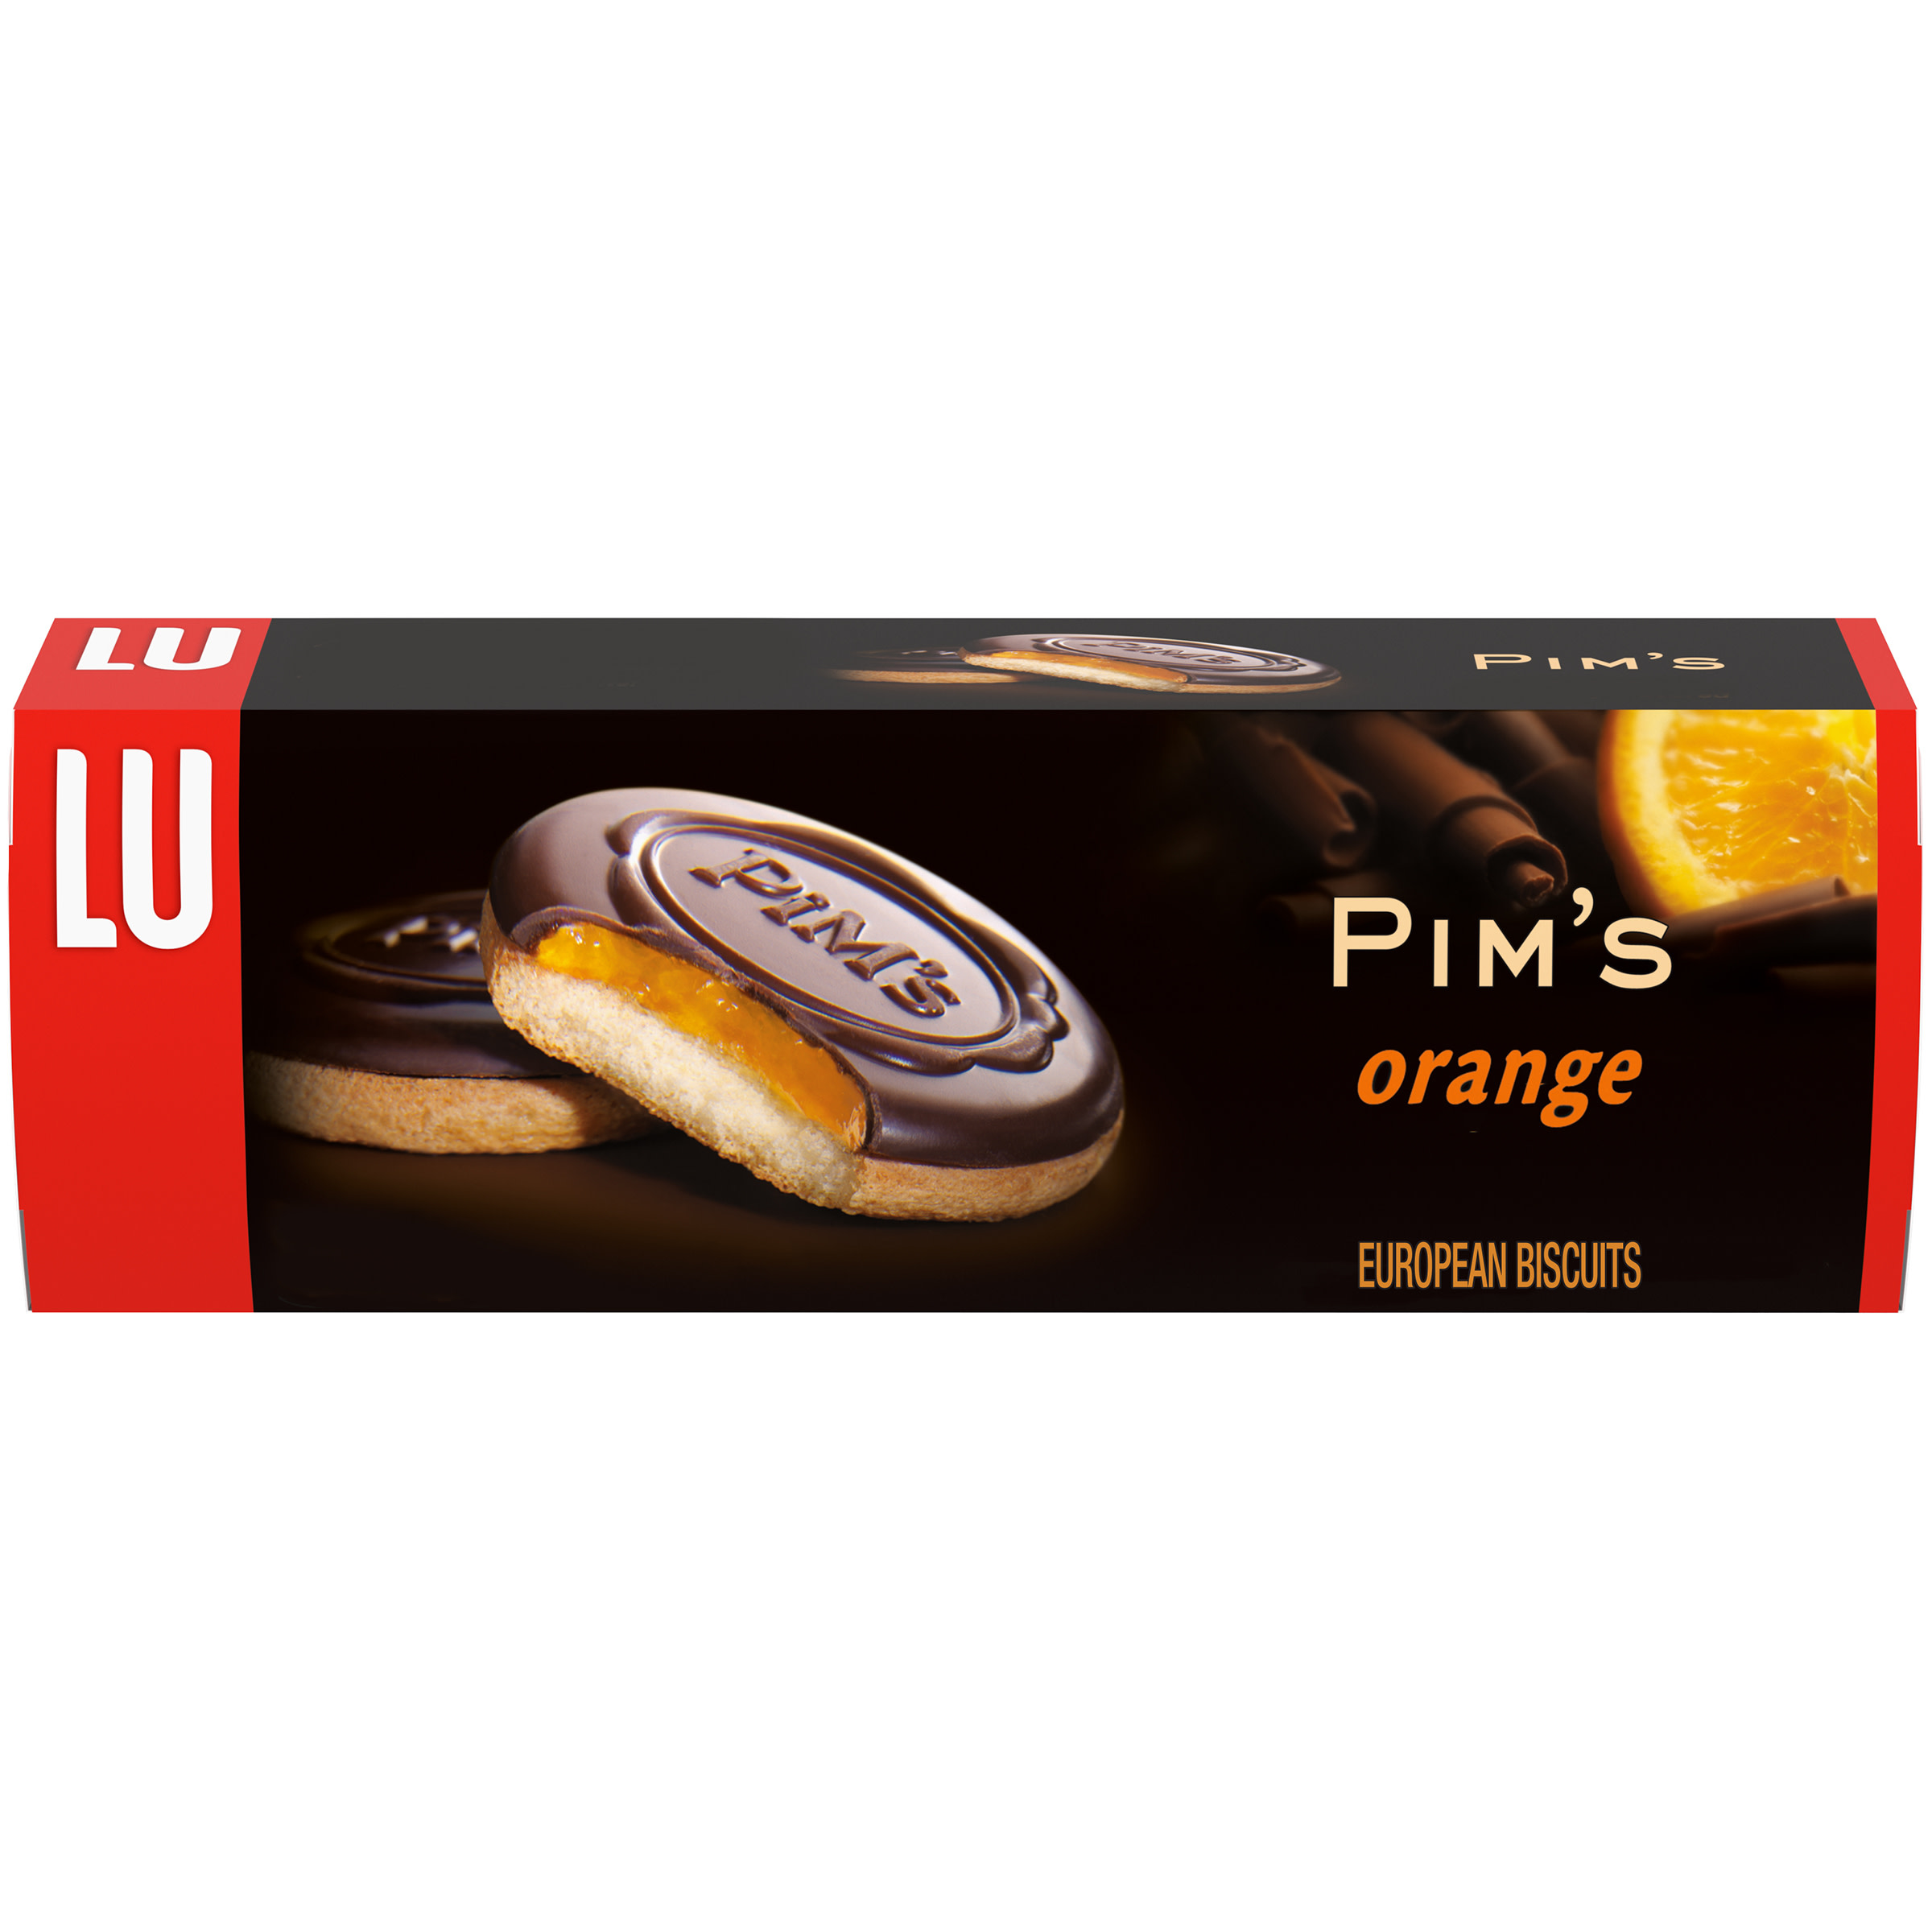 Lu Pim's Orange European Biscuits, 5.29 oz - image 1 of 5